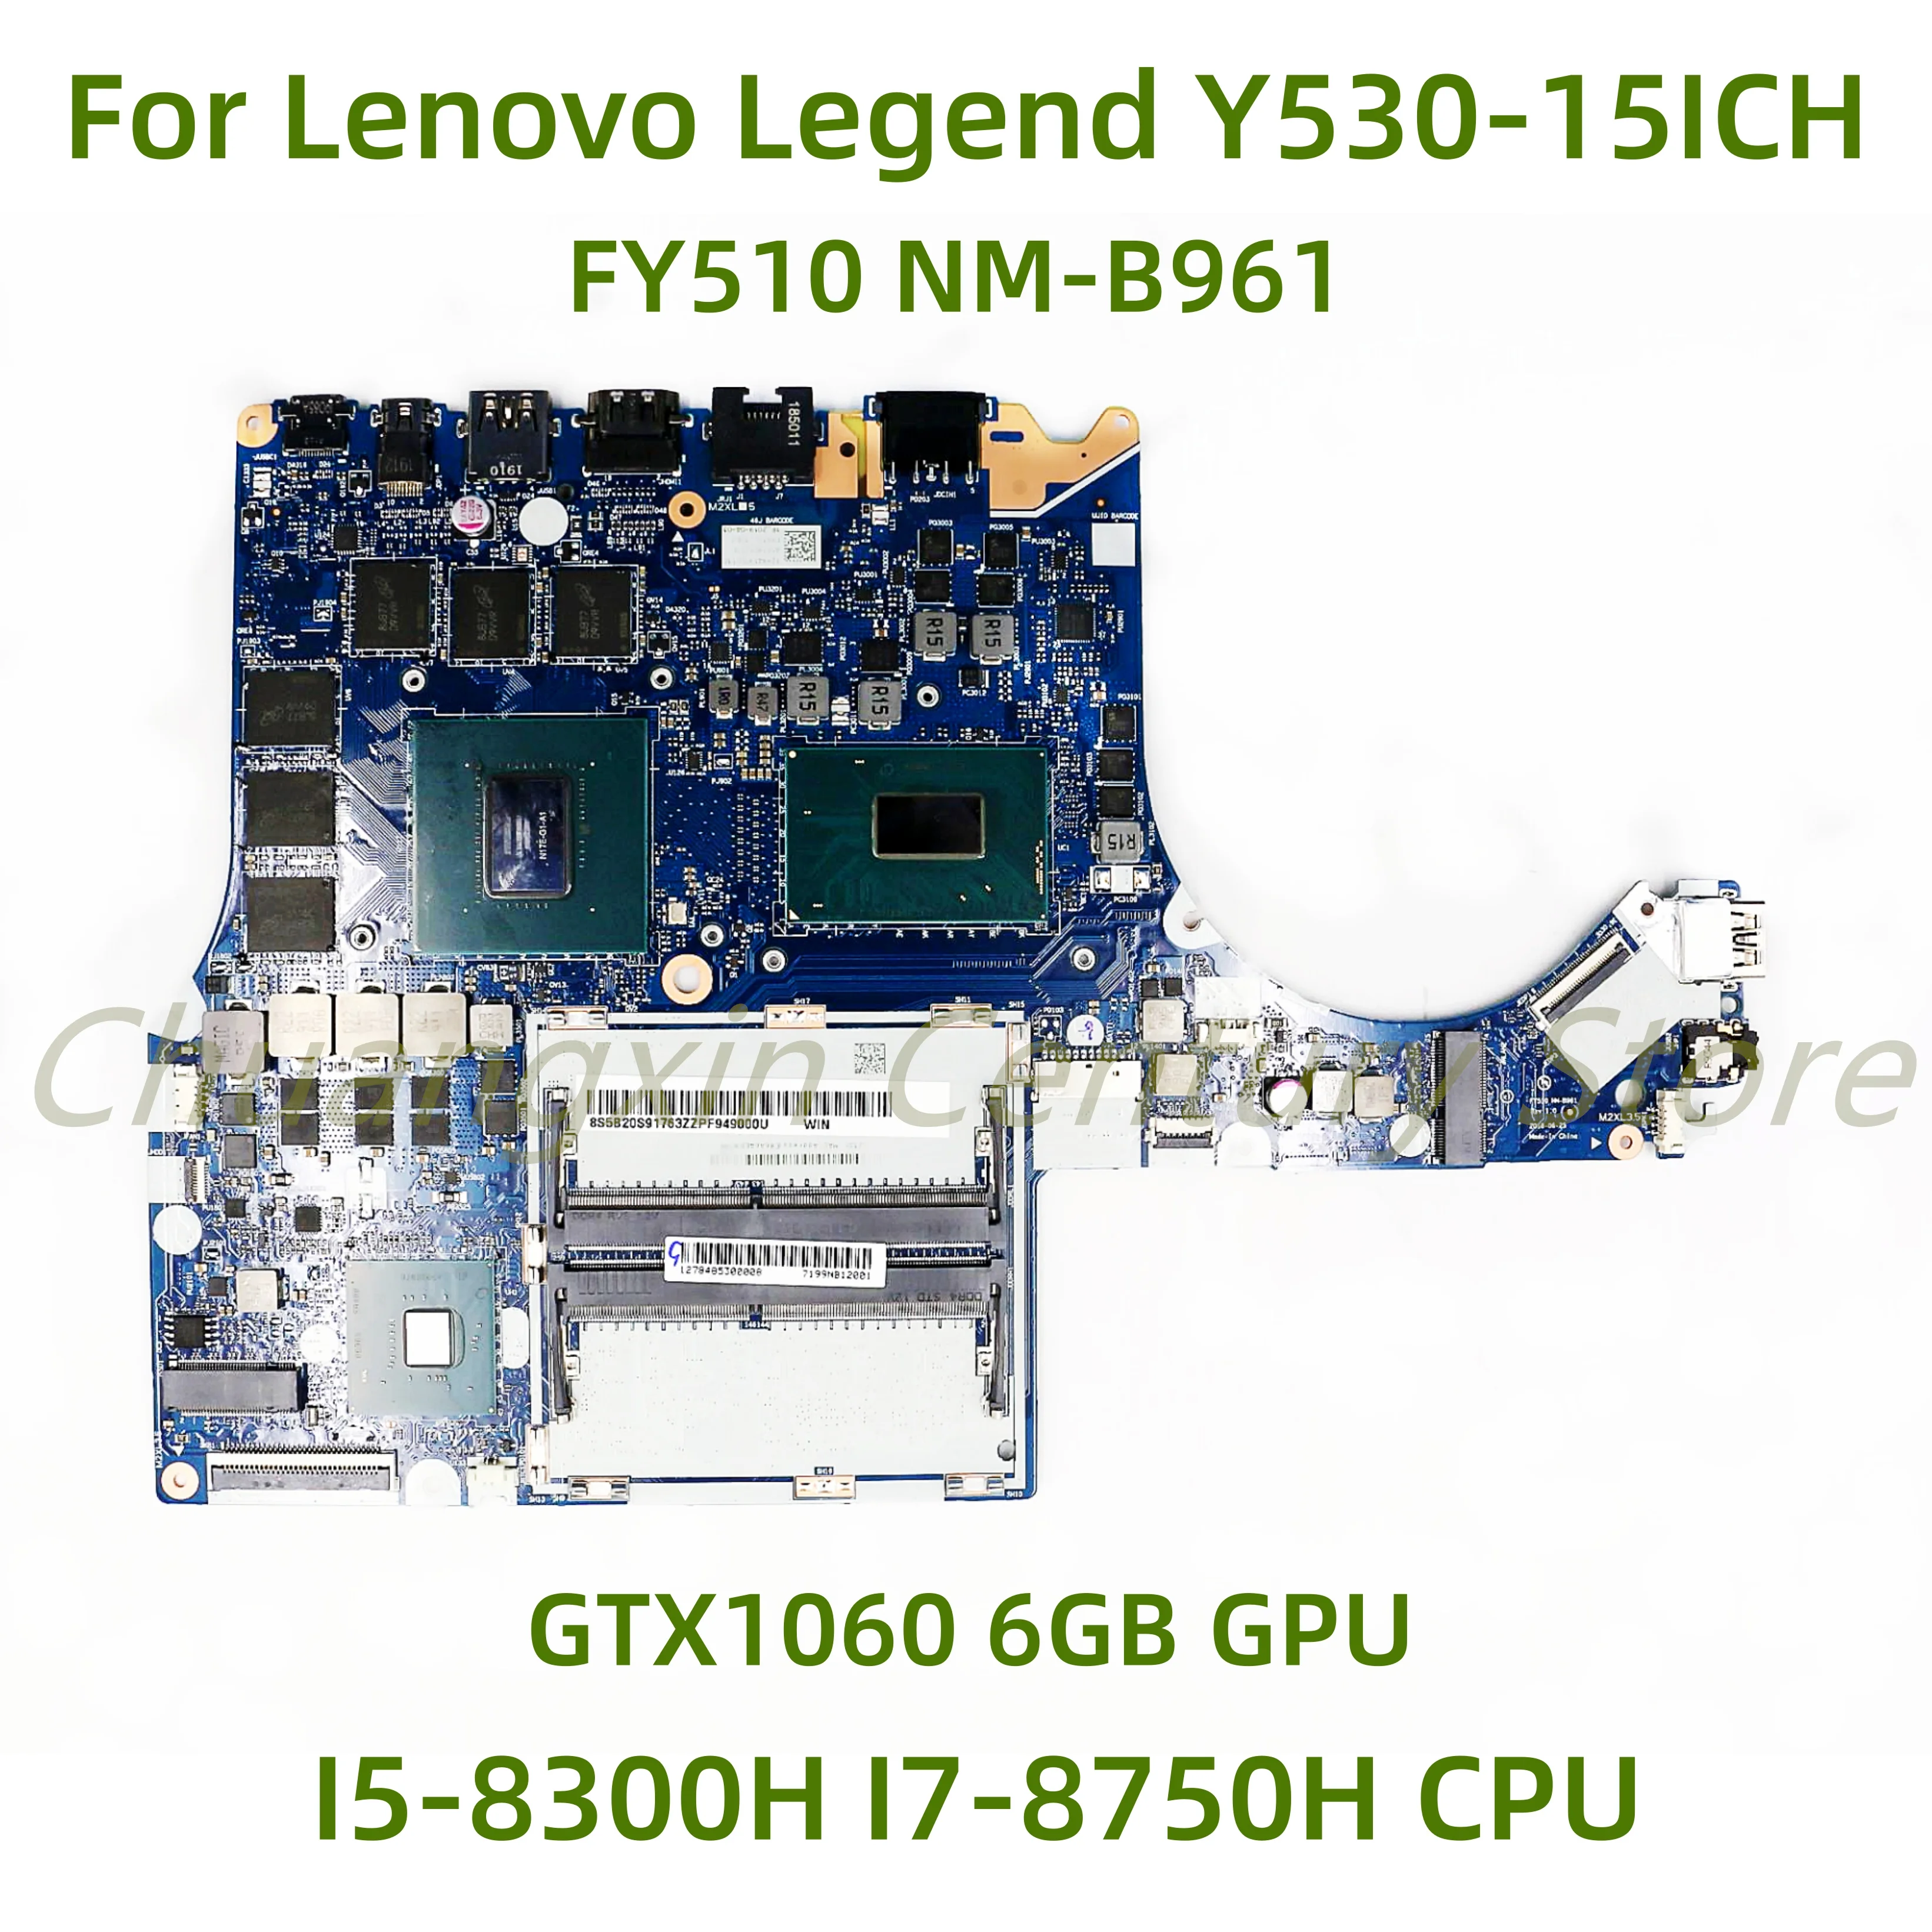 

Suitable for Lenovo Legend Y530-15ICH Laptop motherboard FY510 NM-B961 with I5-8300H I7-8750H CPU GTX1060 6GB GPU 100% Tested